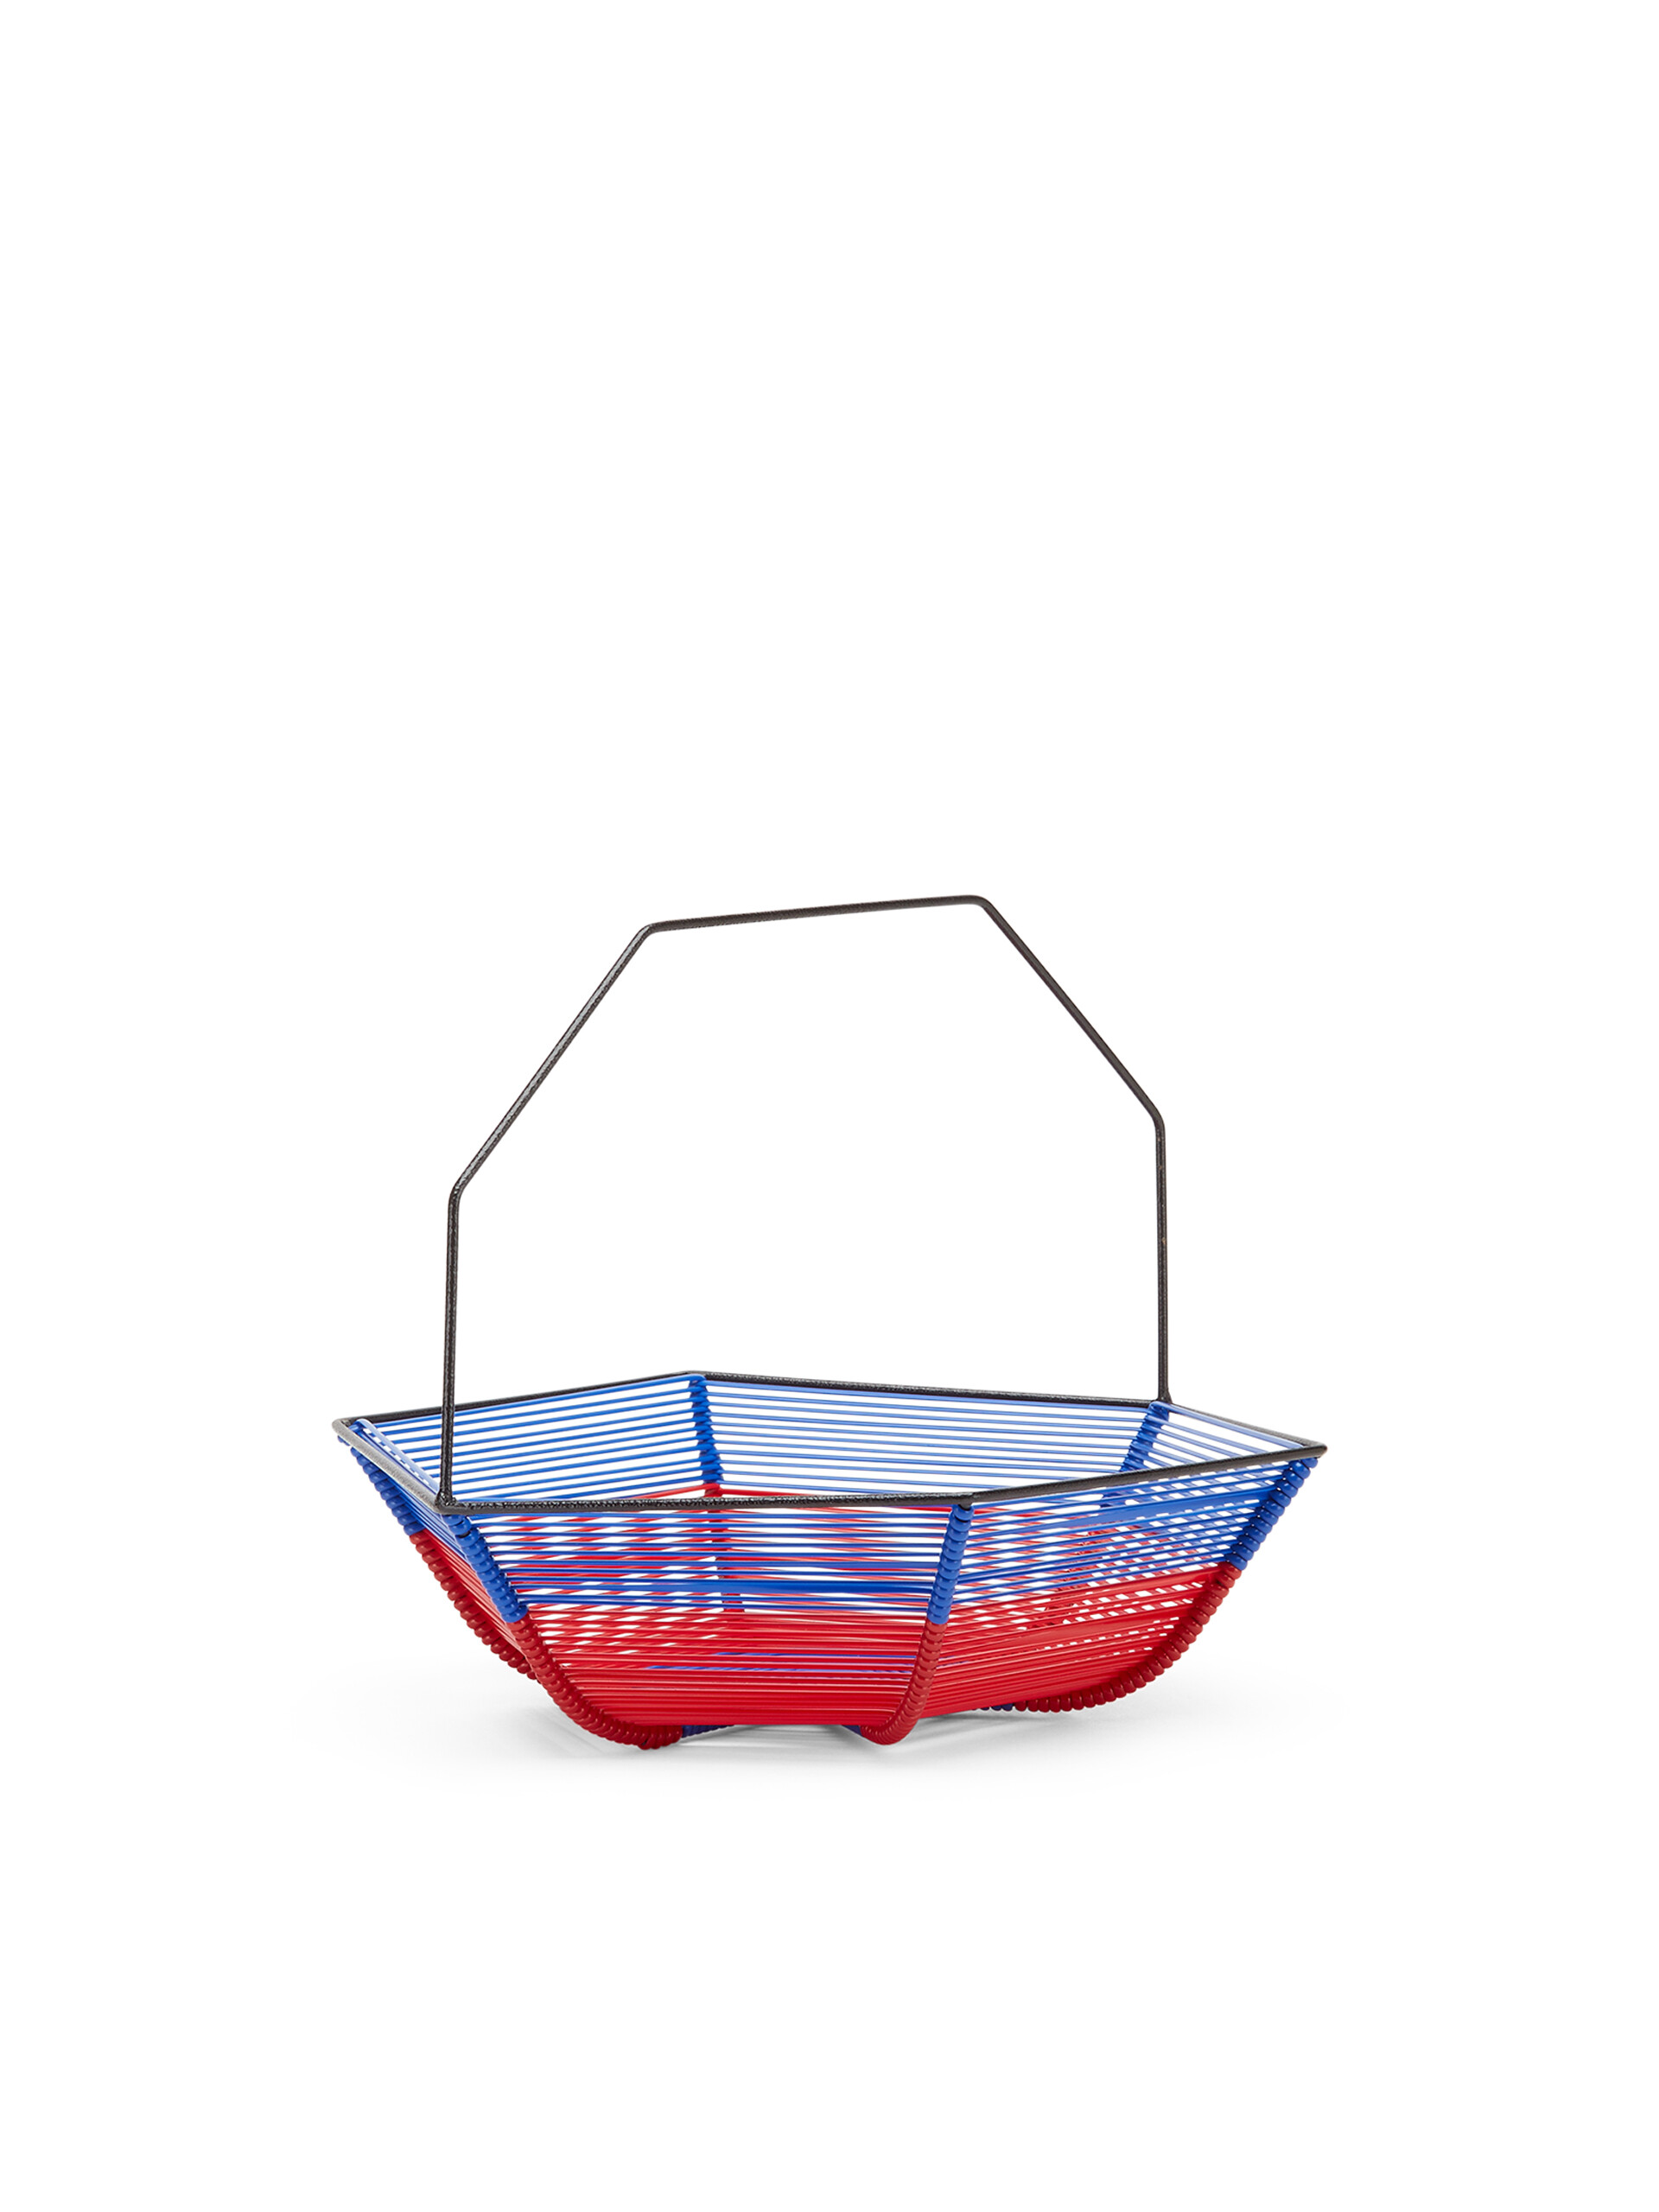 Portafrutta esagonale MARNI MARKET blu e rosso - Accessori - Image 2